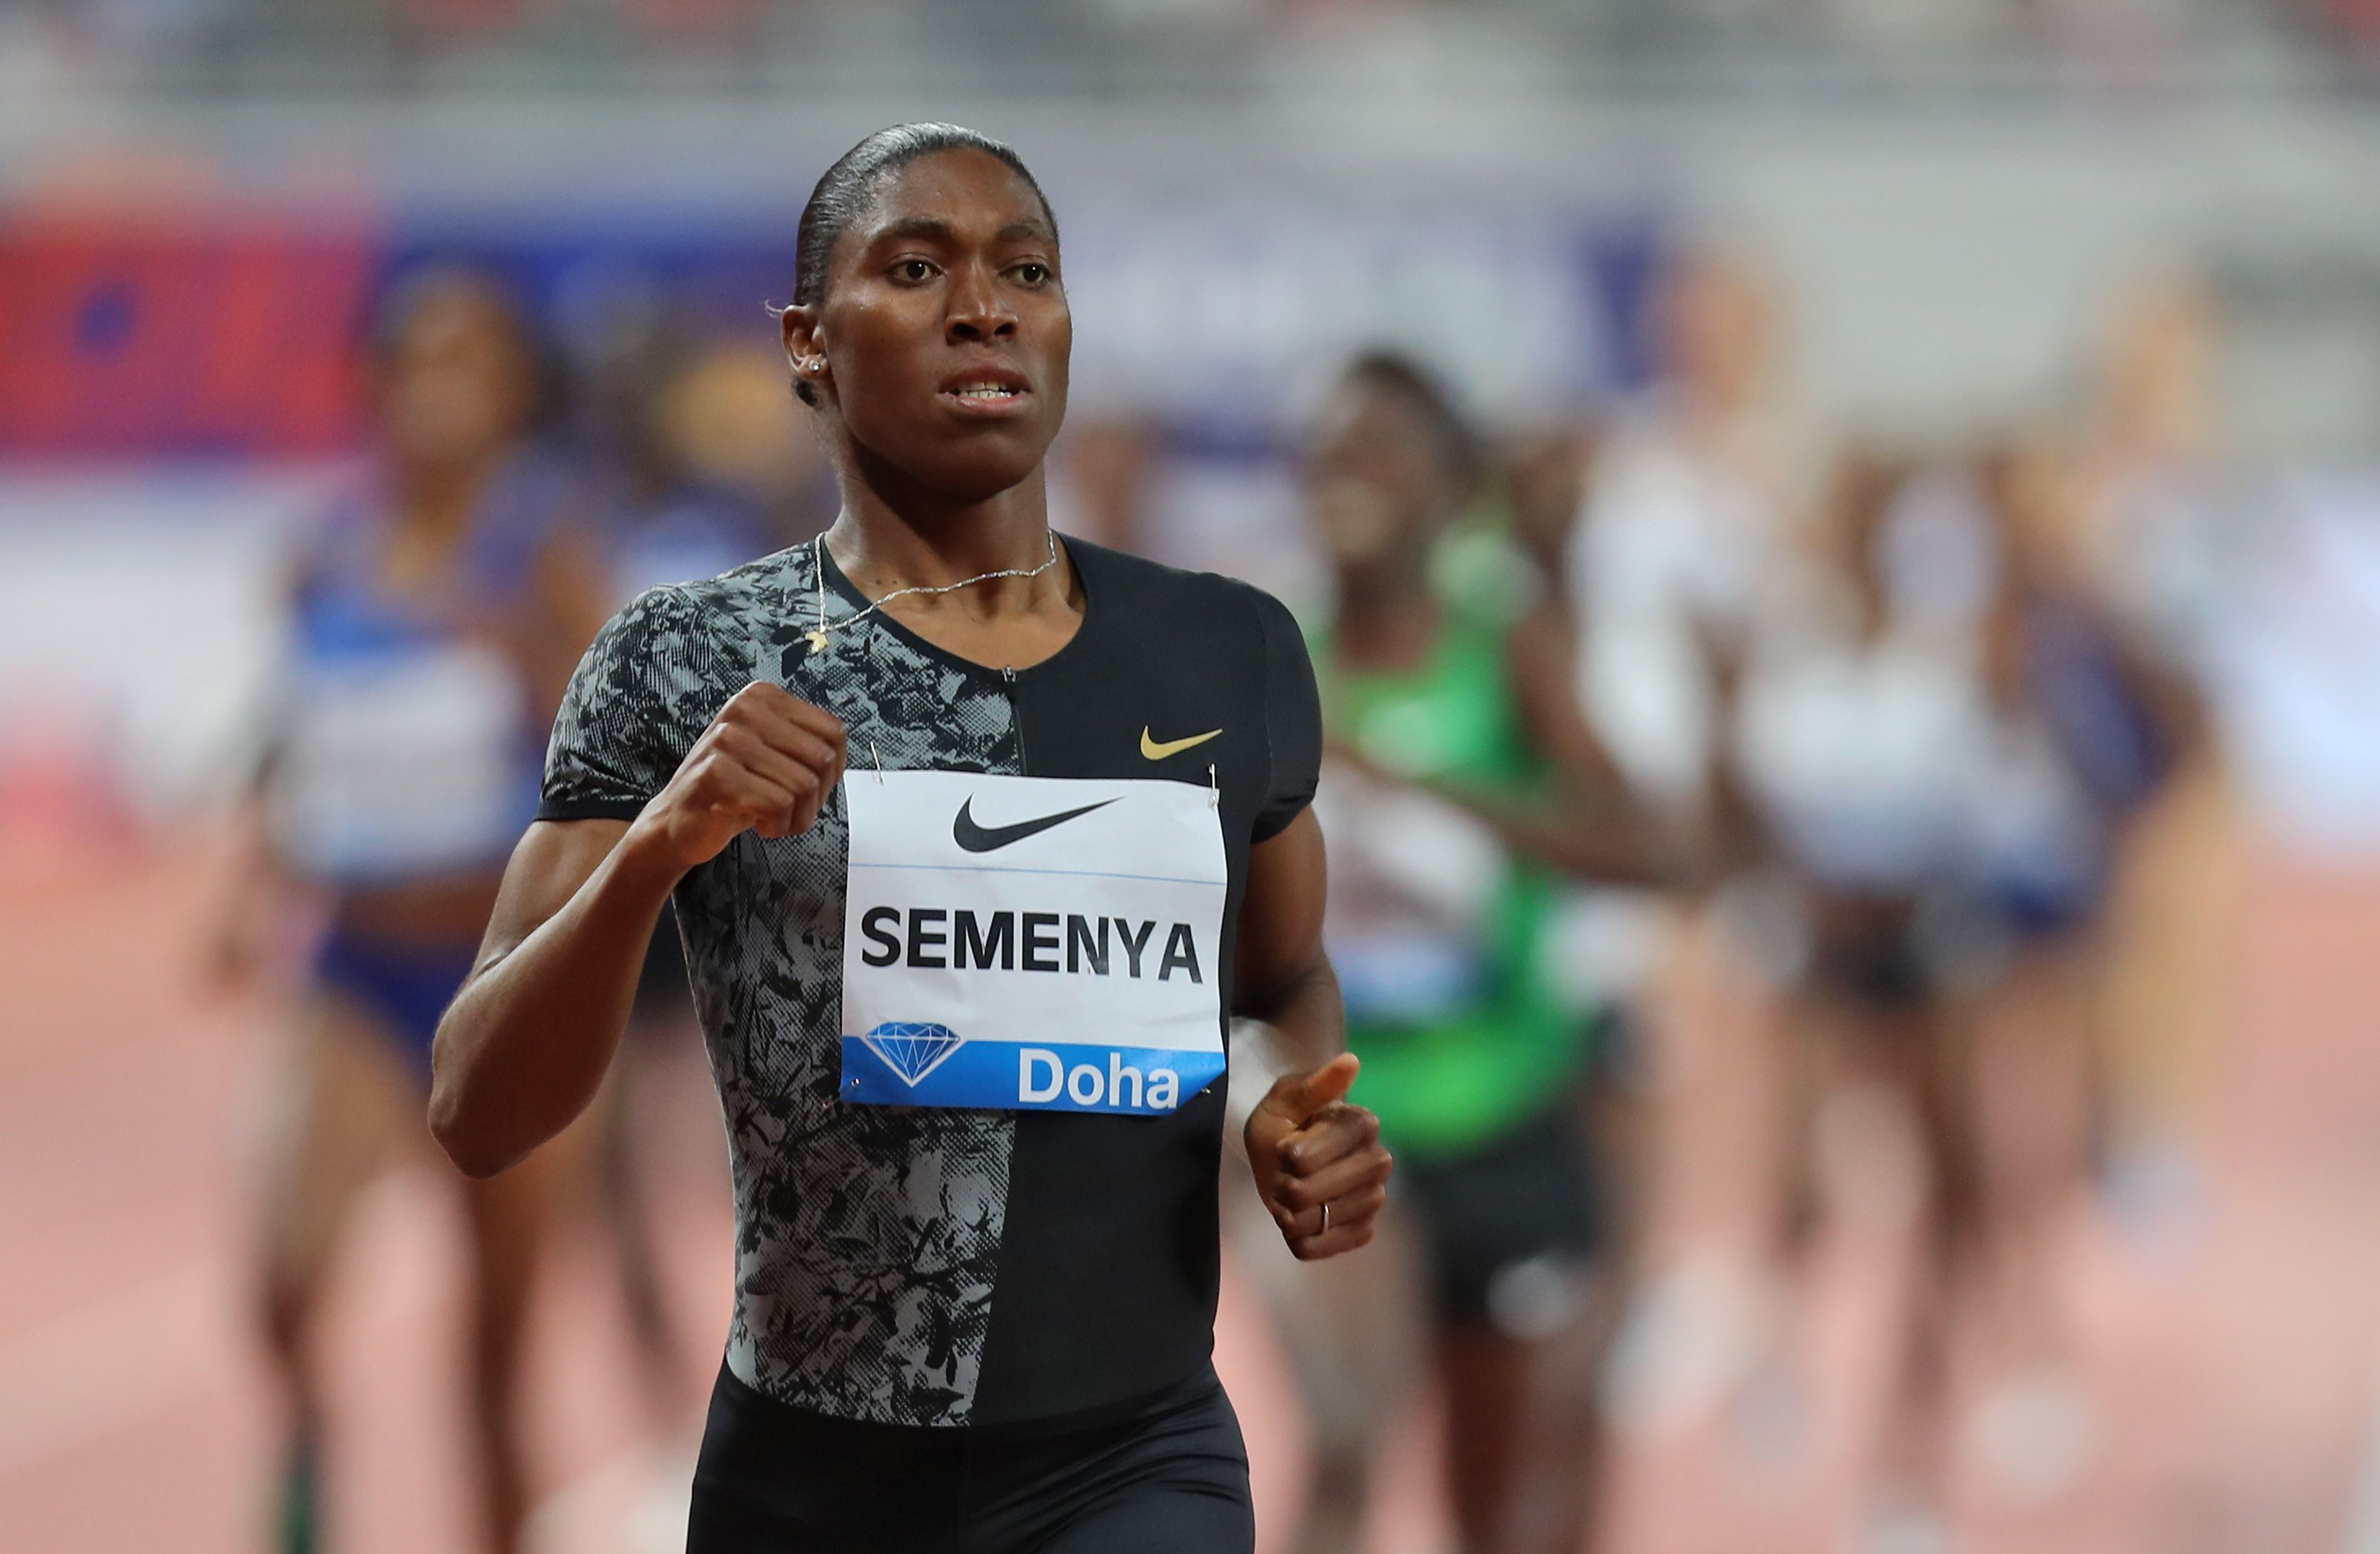 Caster Semenya desea que la justicia suiza se pronuncie sobre si el reglamento de la IAAF es "discriminatorio". (Foto Prensa Libre: AFP)